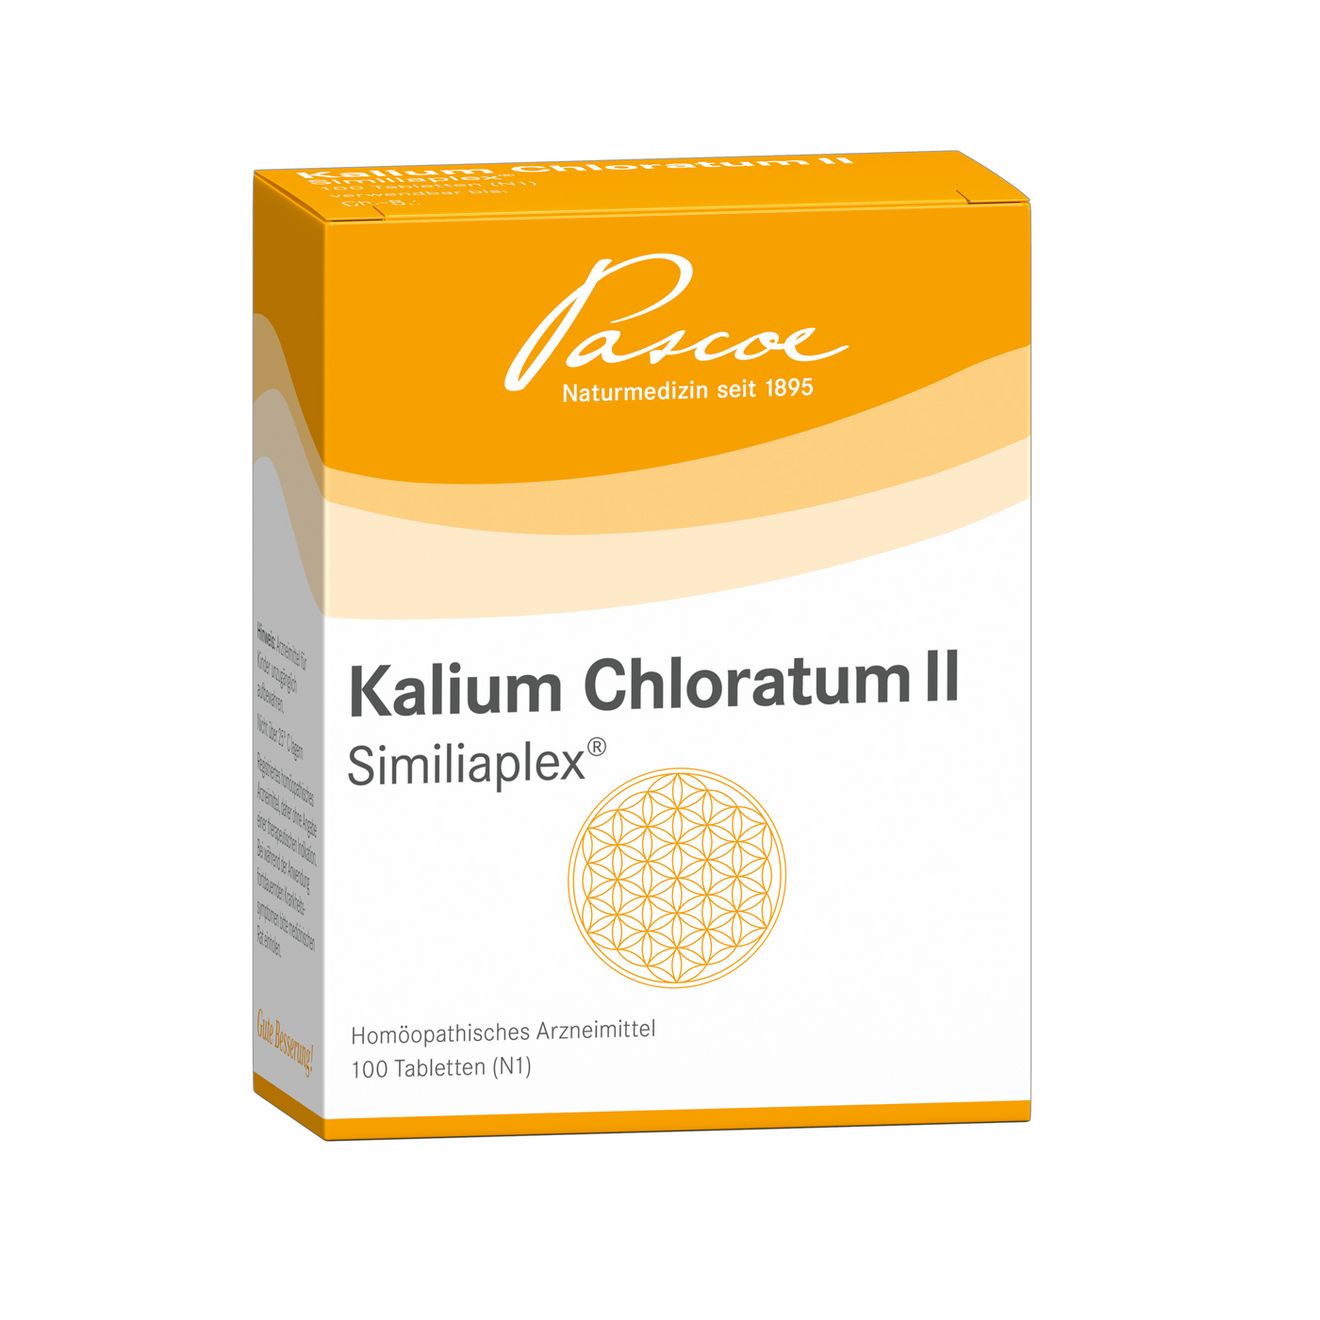 Kalium chloratum 2 Similiaplex 100 Packshot PZN 07568531